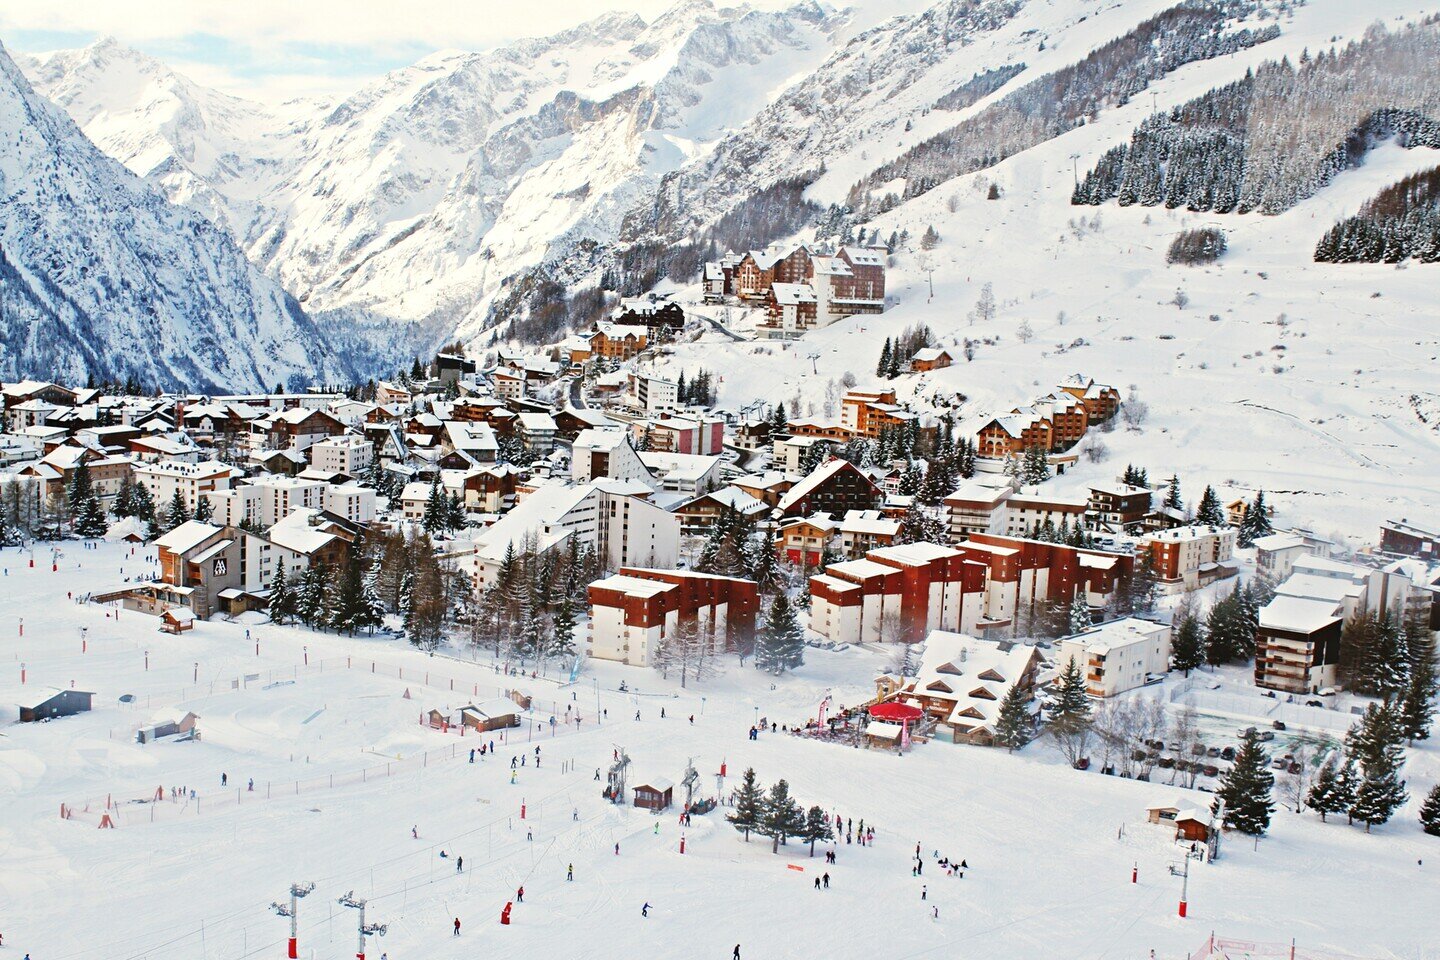 Verschneites Dorf in den Bergen - Skiurlaub